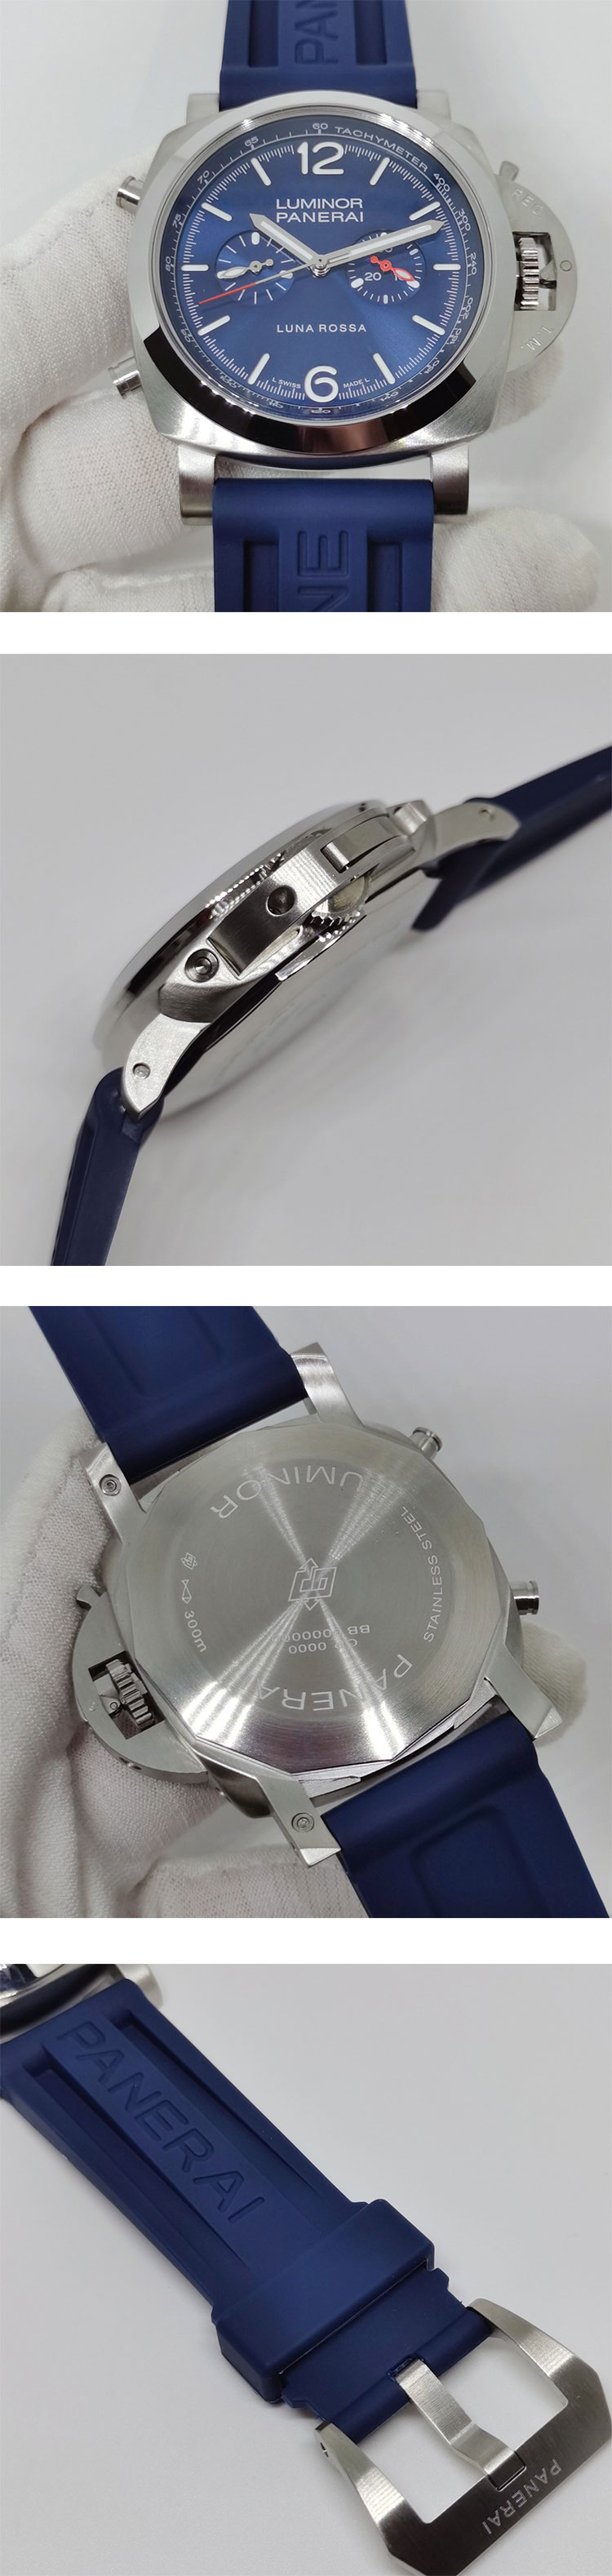 人気パネライブランドコピー時計 ルミノール クロノルナ ロッサ  PAM01303